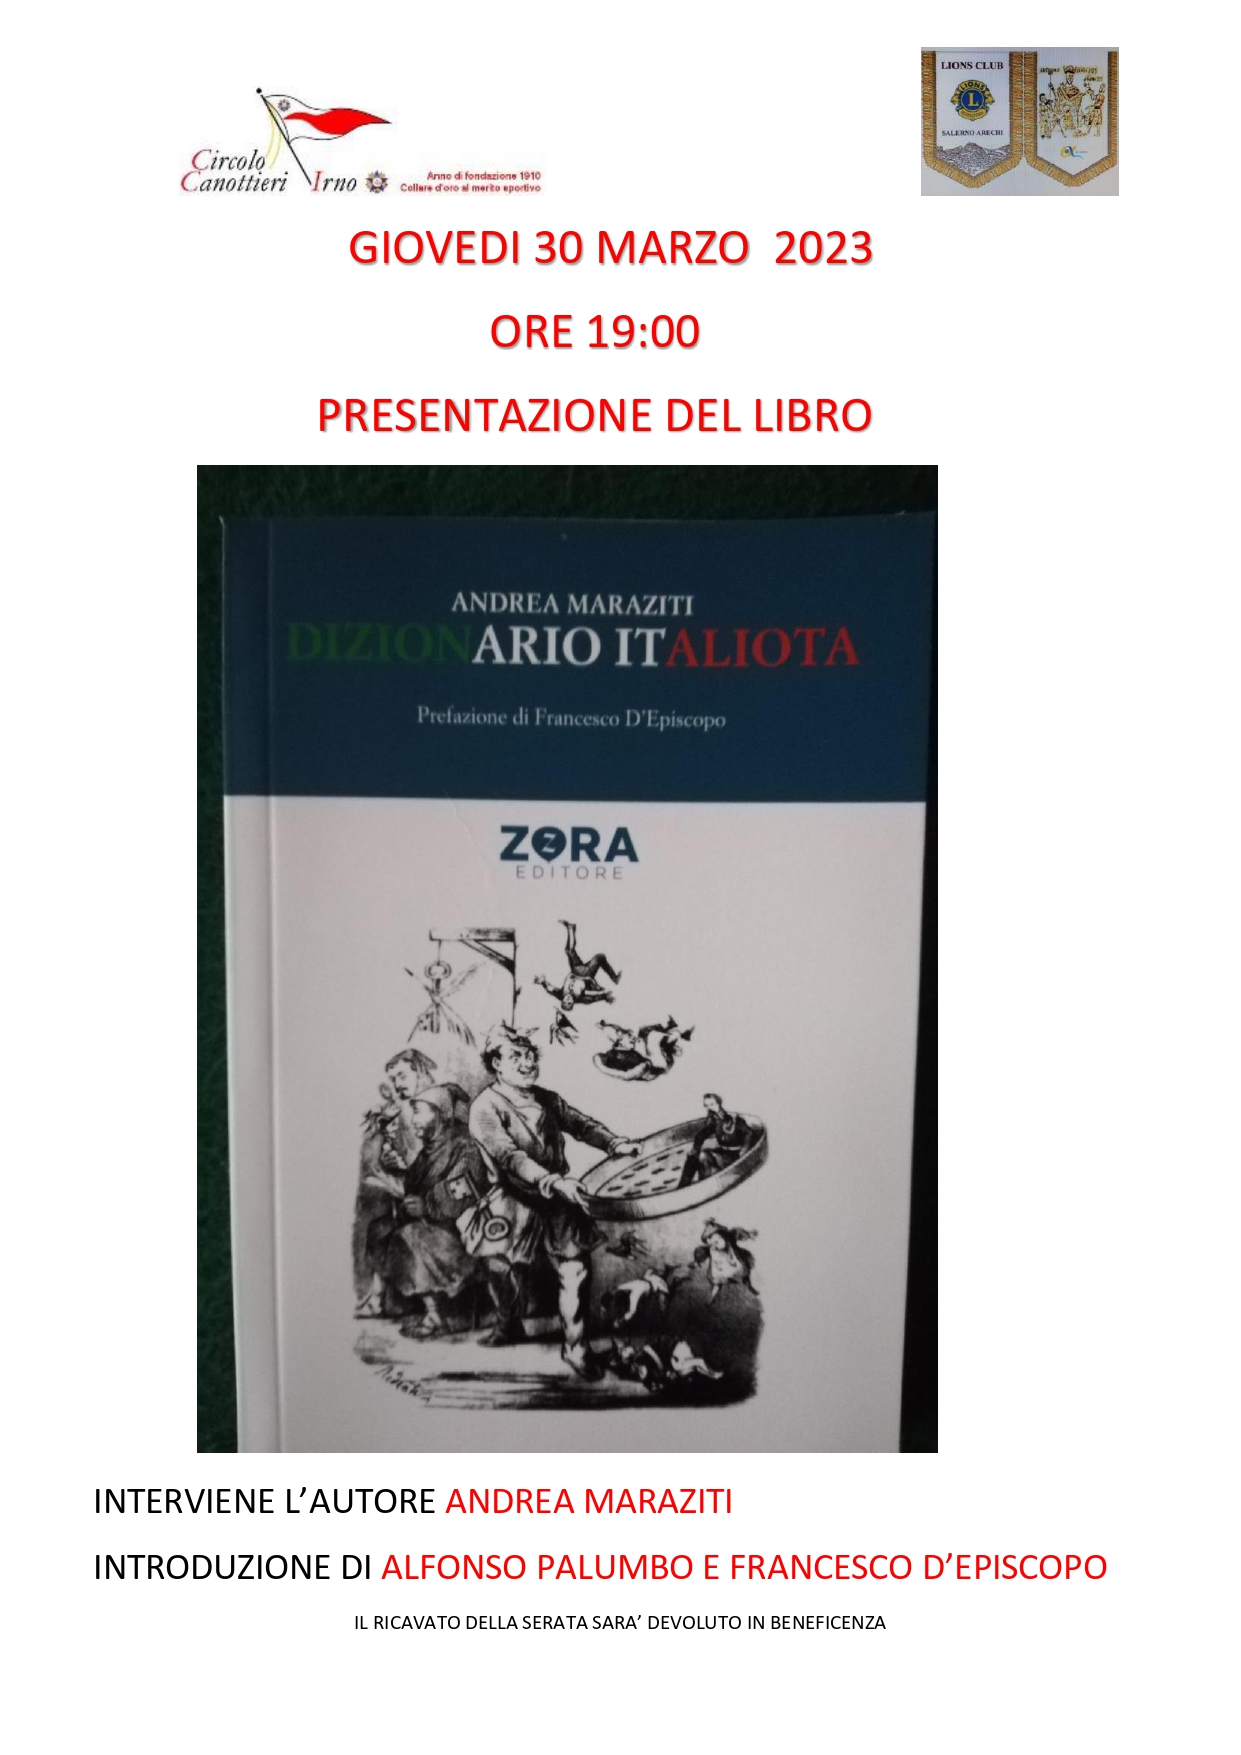 Salerno: al Circolo Canottieri Irno, presentazione libro d’Andrea Maraziti “Dizionario Italiota”